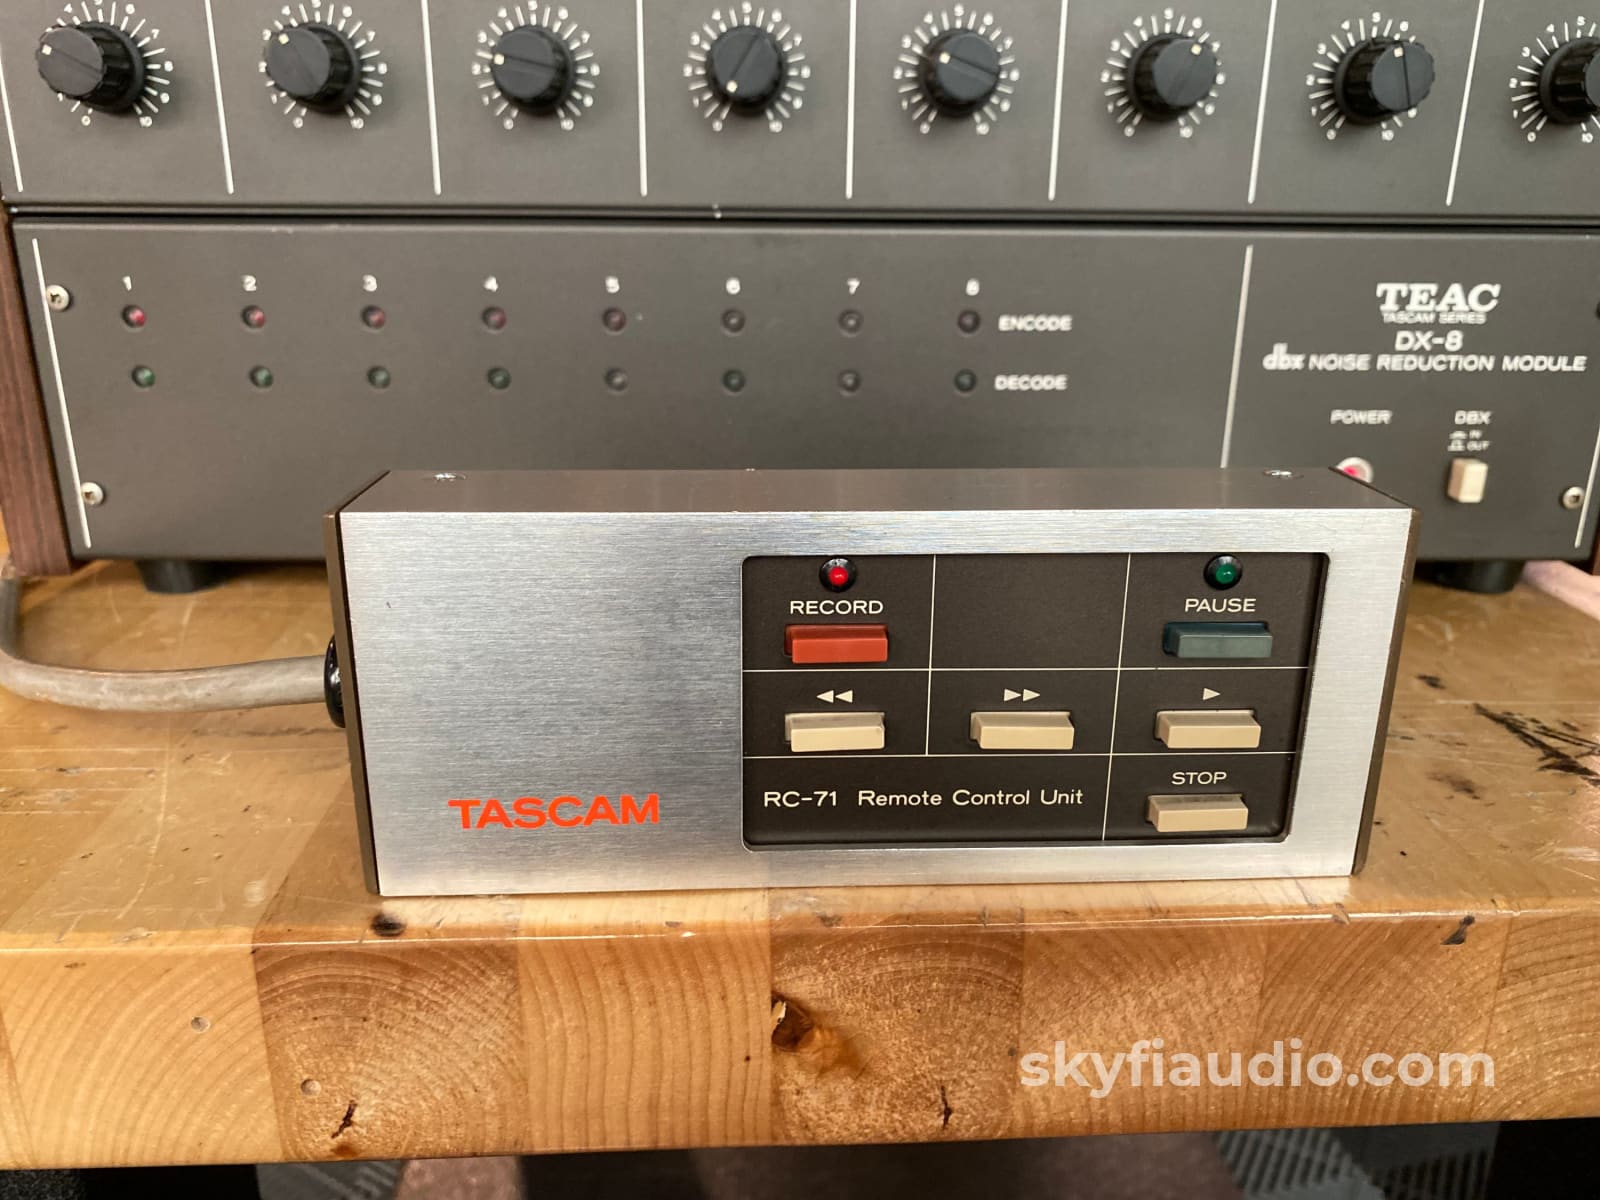 TEAC Tascam 80-8 Series Vintage Reel to Reel w/ DX-8 dbx Module & Remo